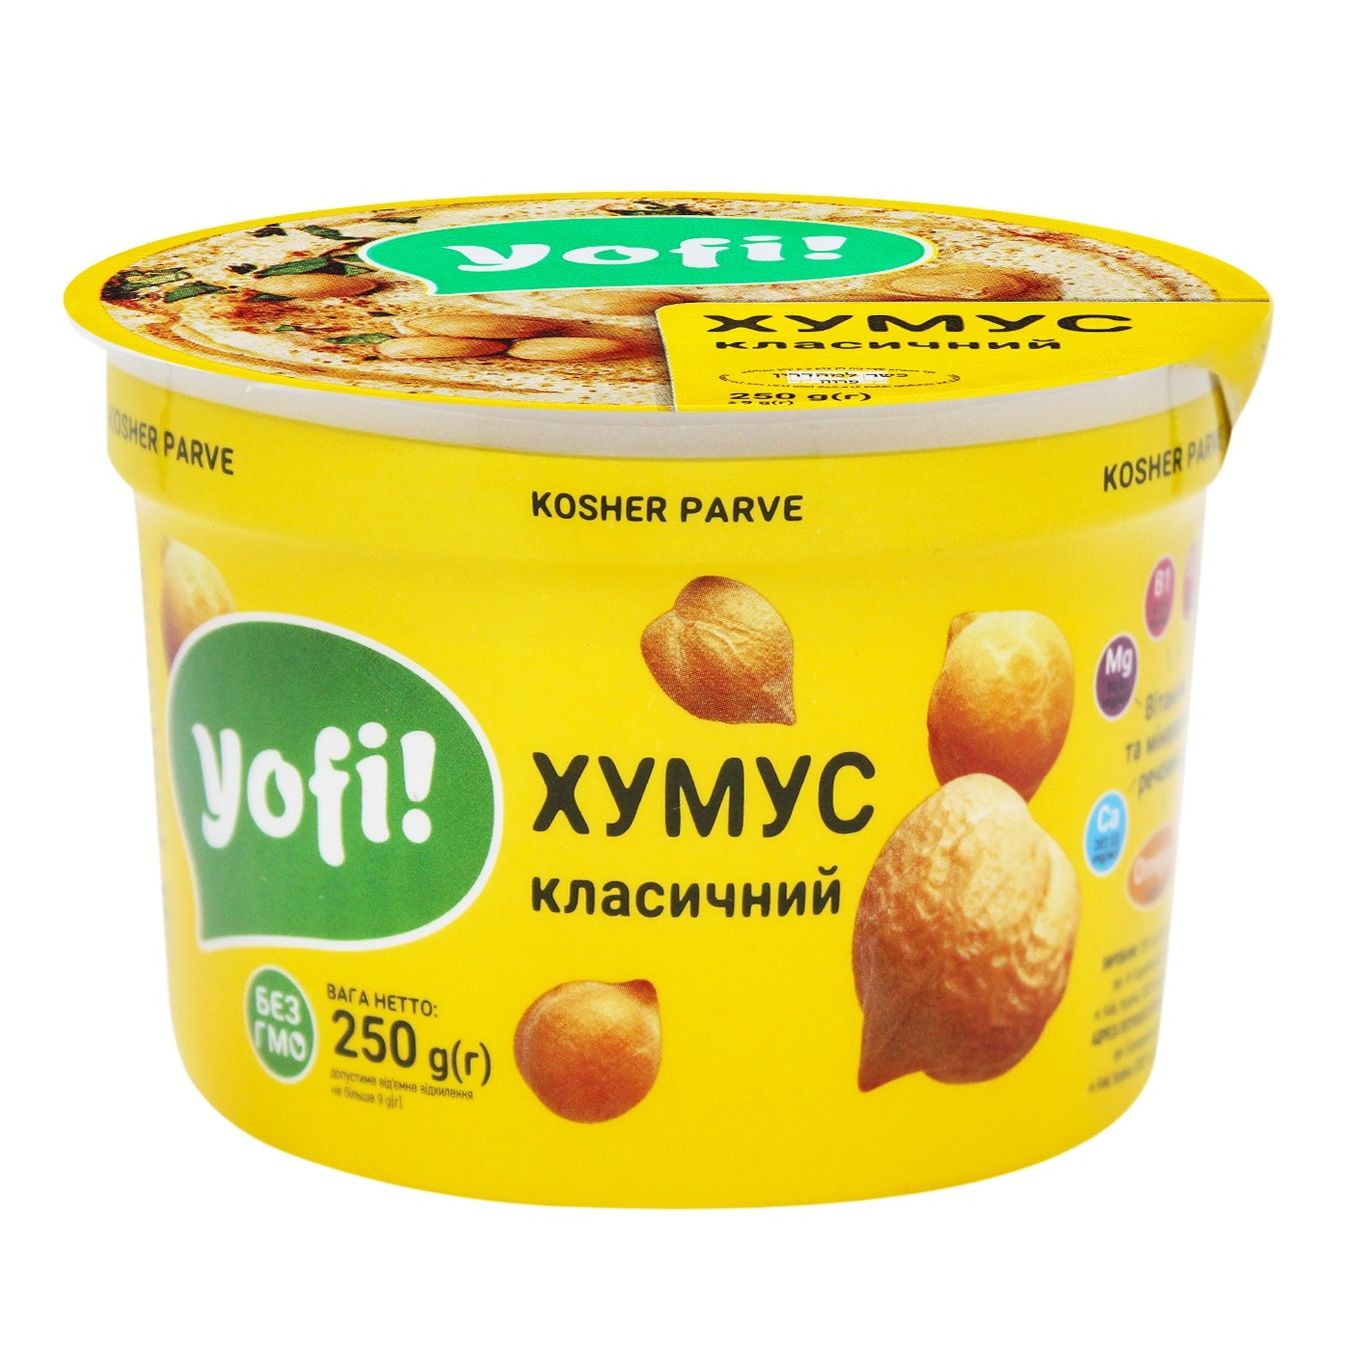 Хумус Yofi! Класичний 250г